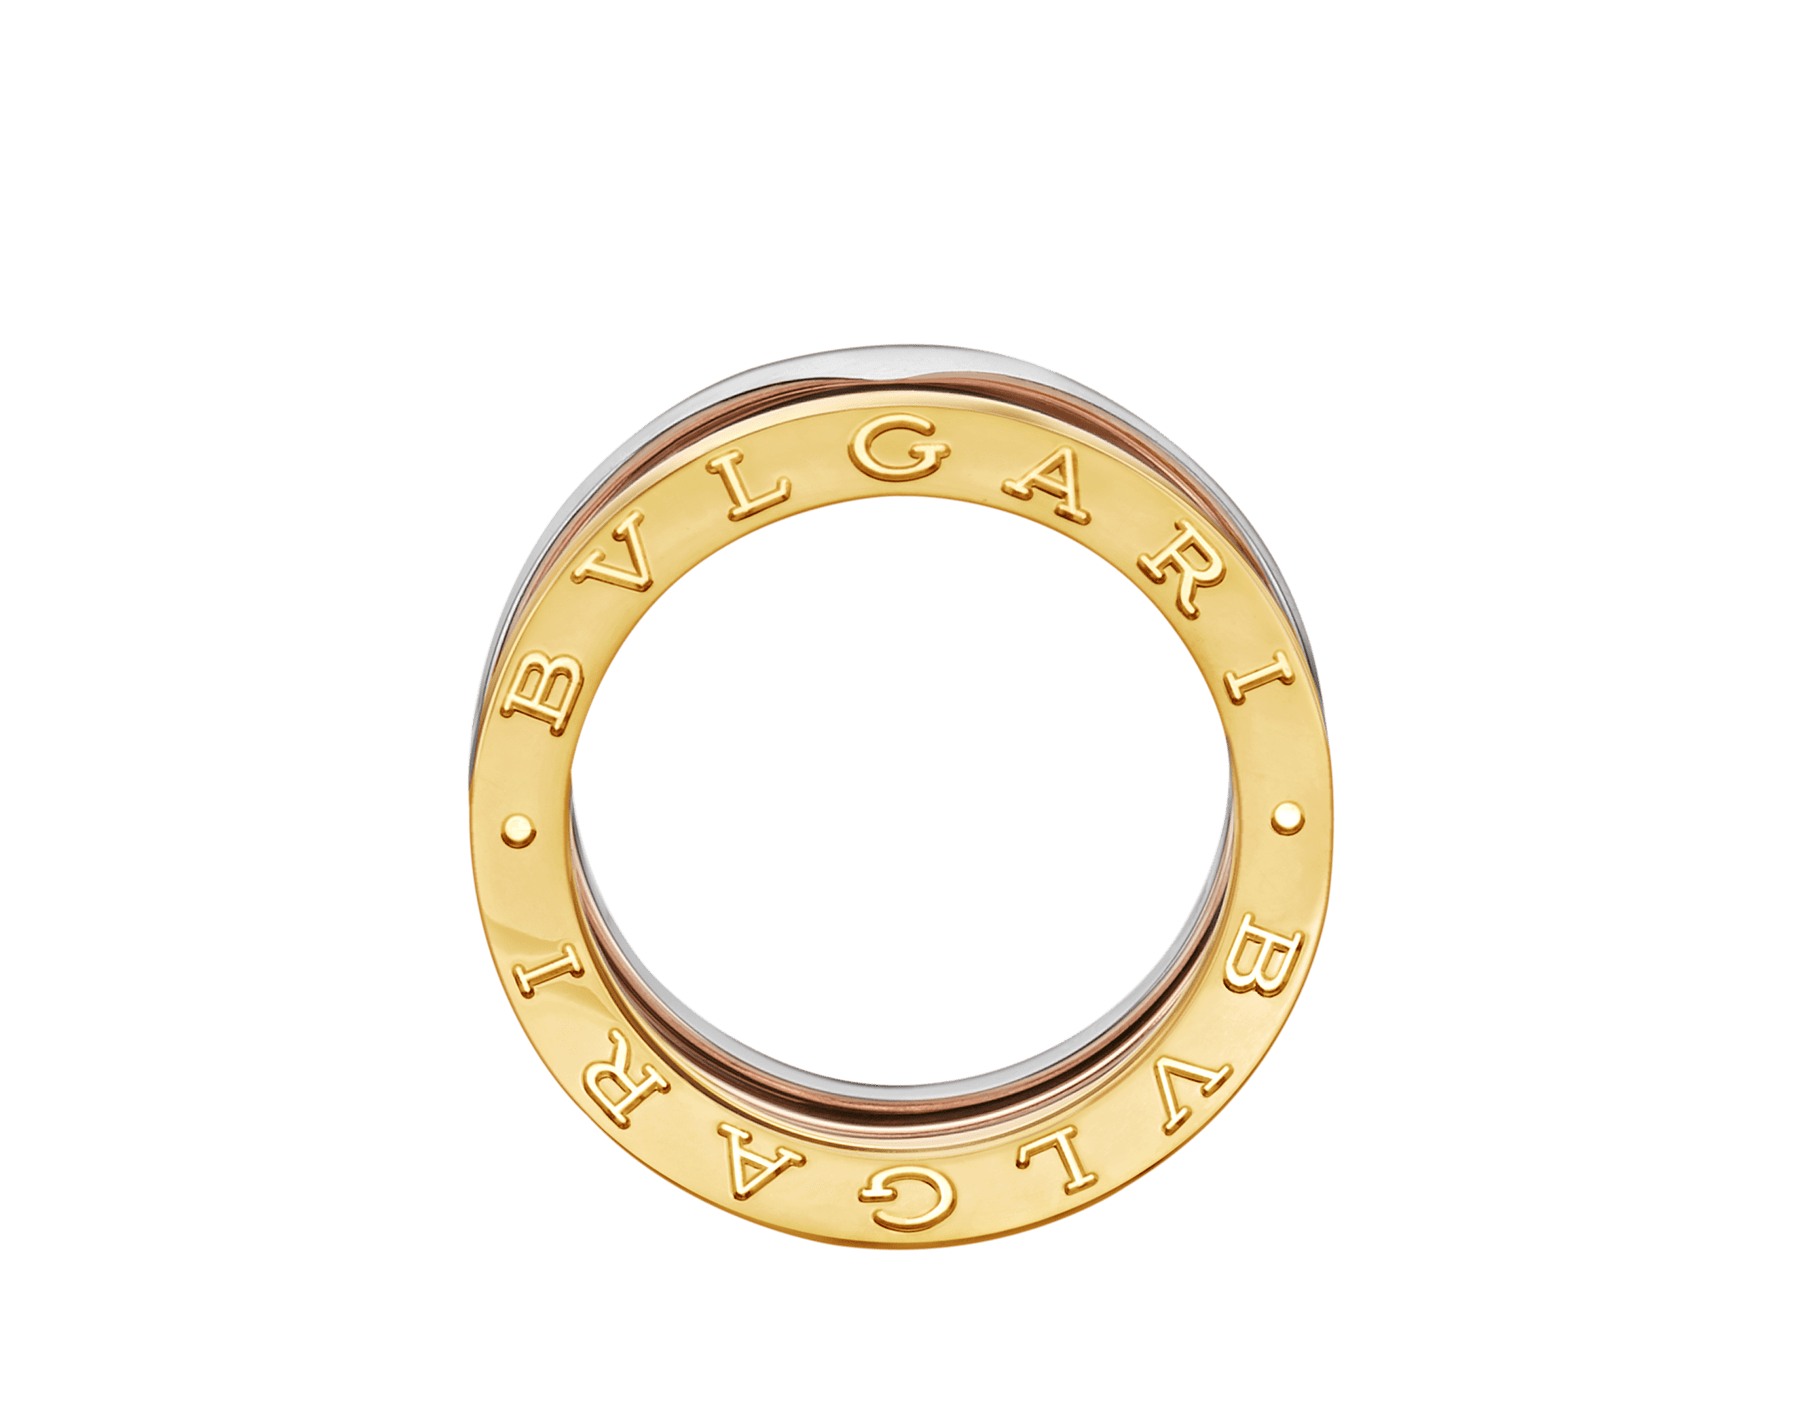 bvlgari gold ring price